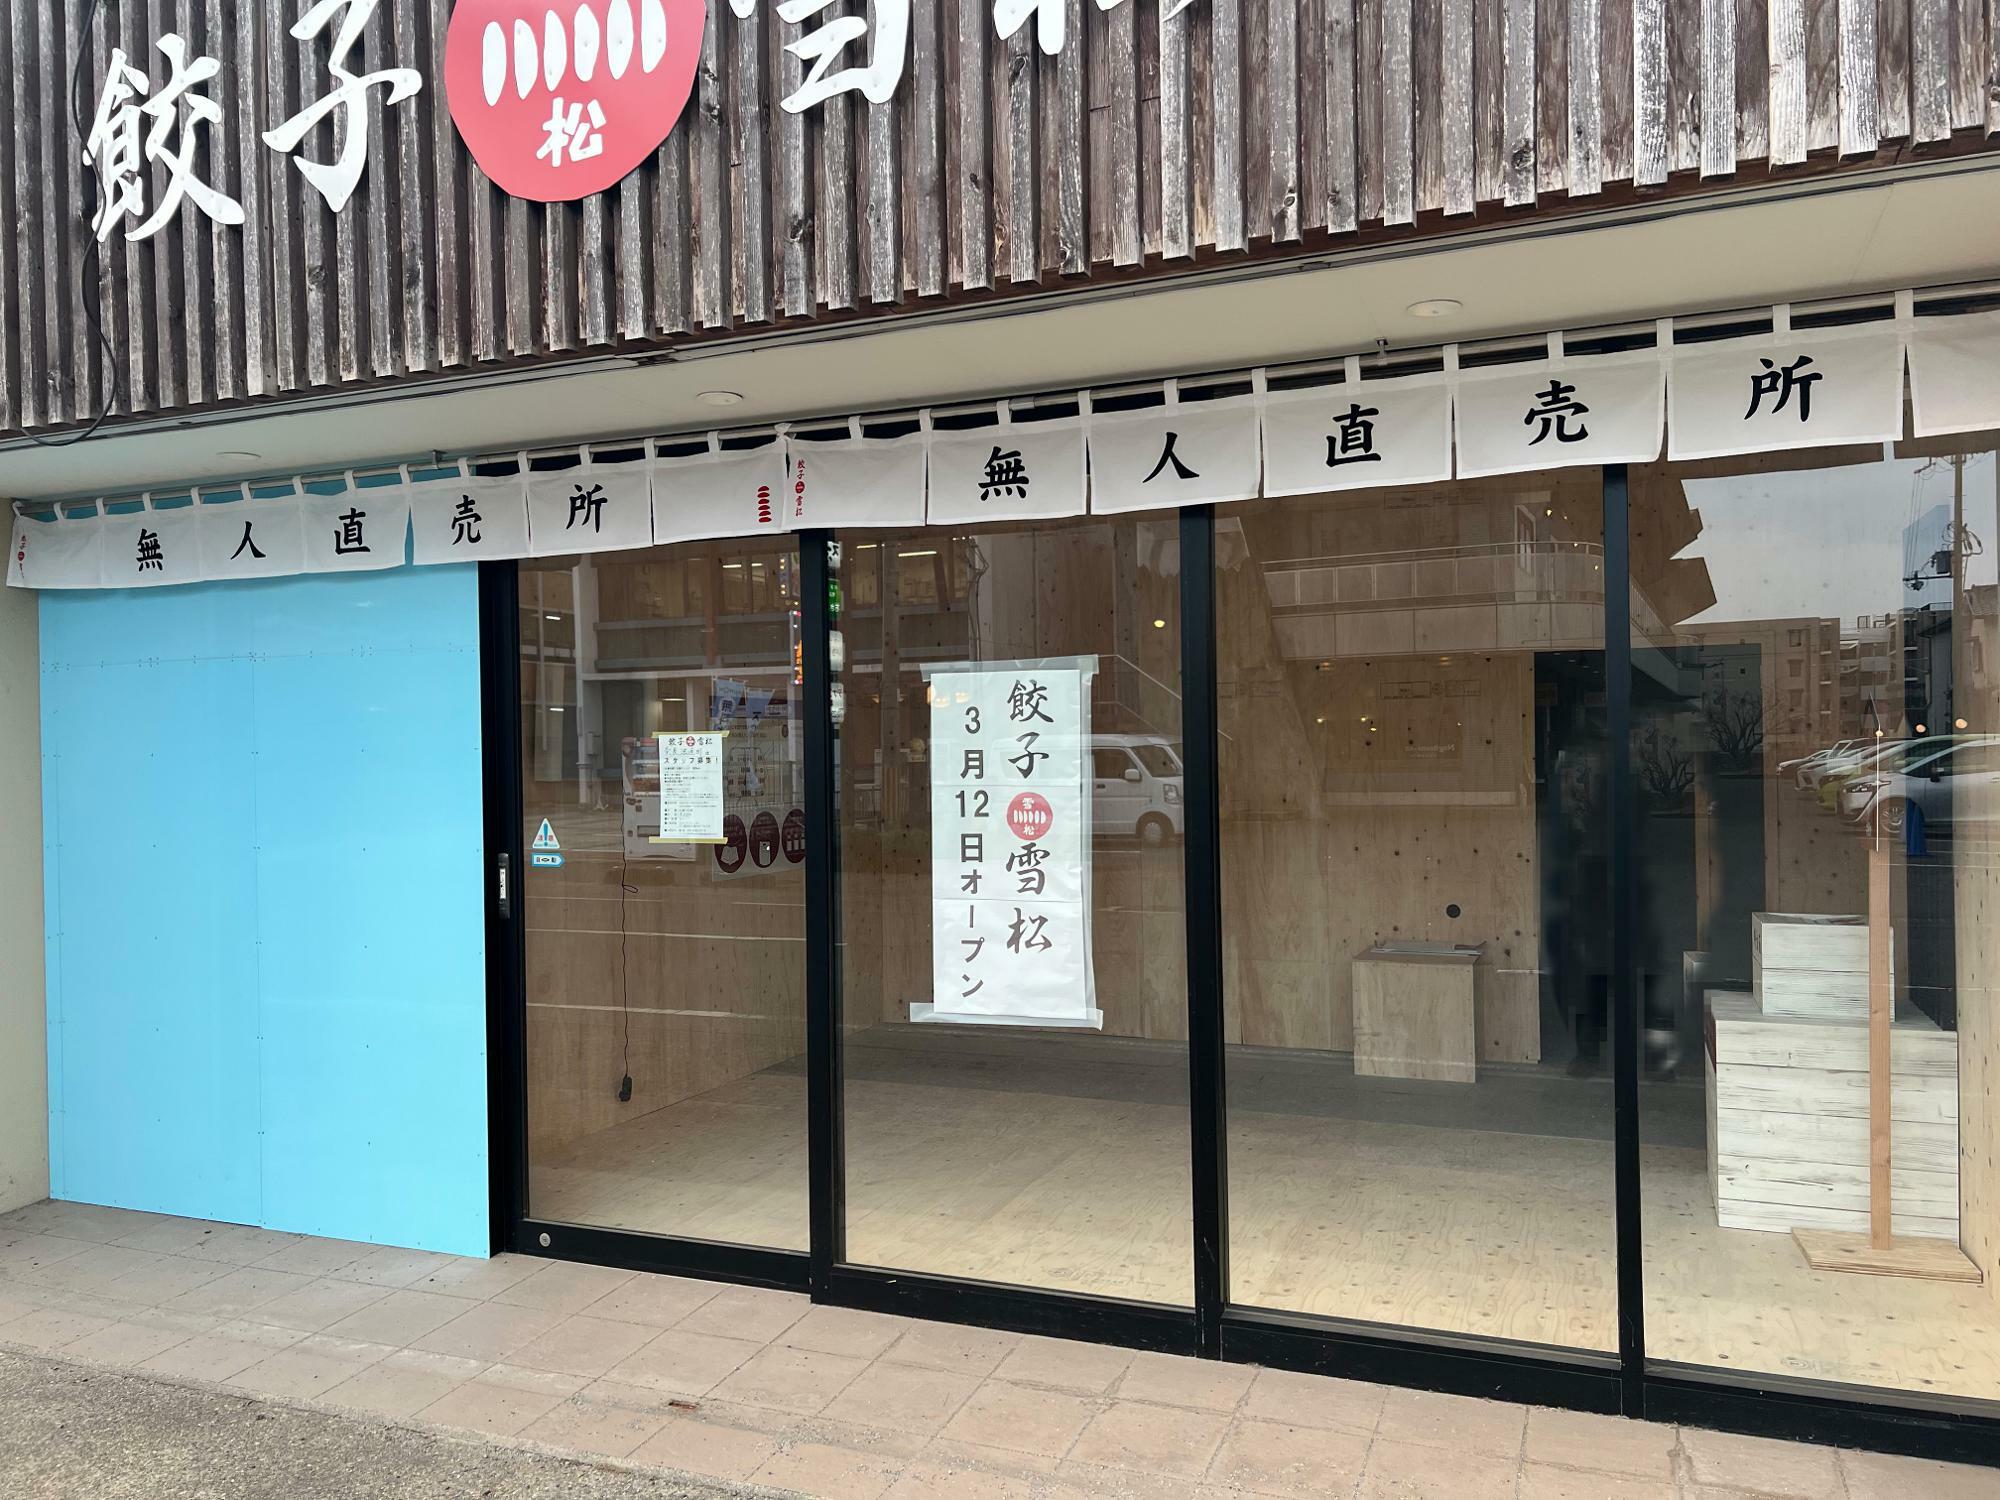 全国で360店舗展開中。奈良市へは初出店となるようです。